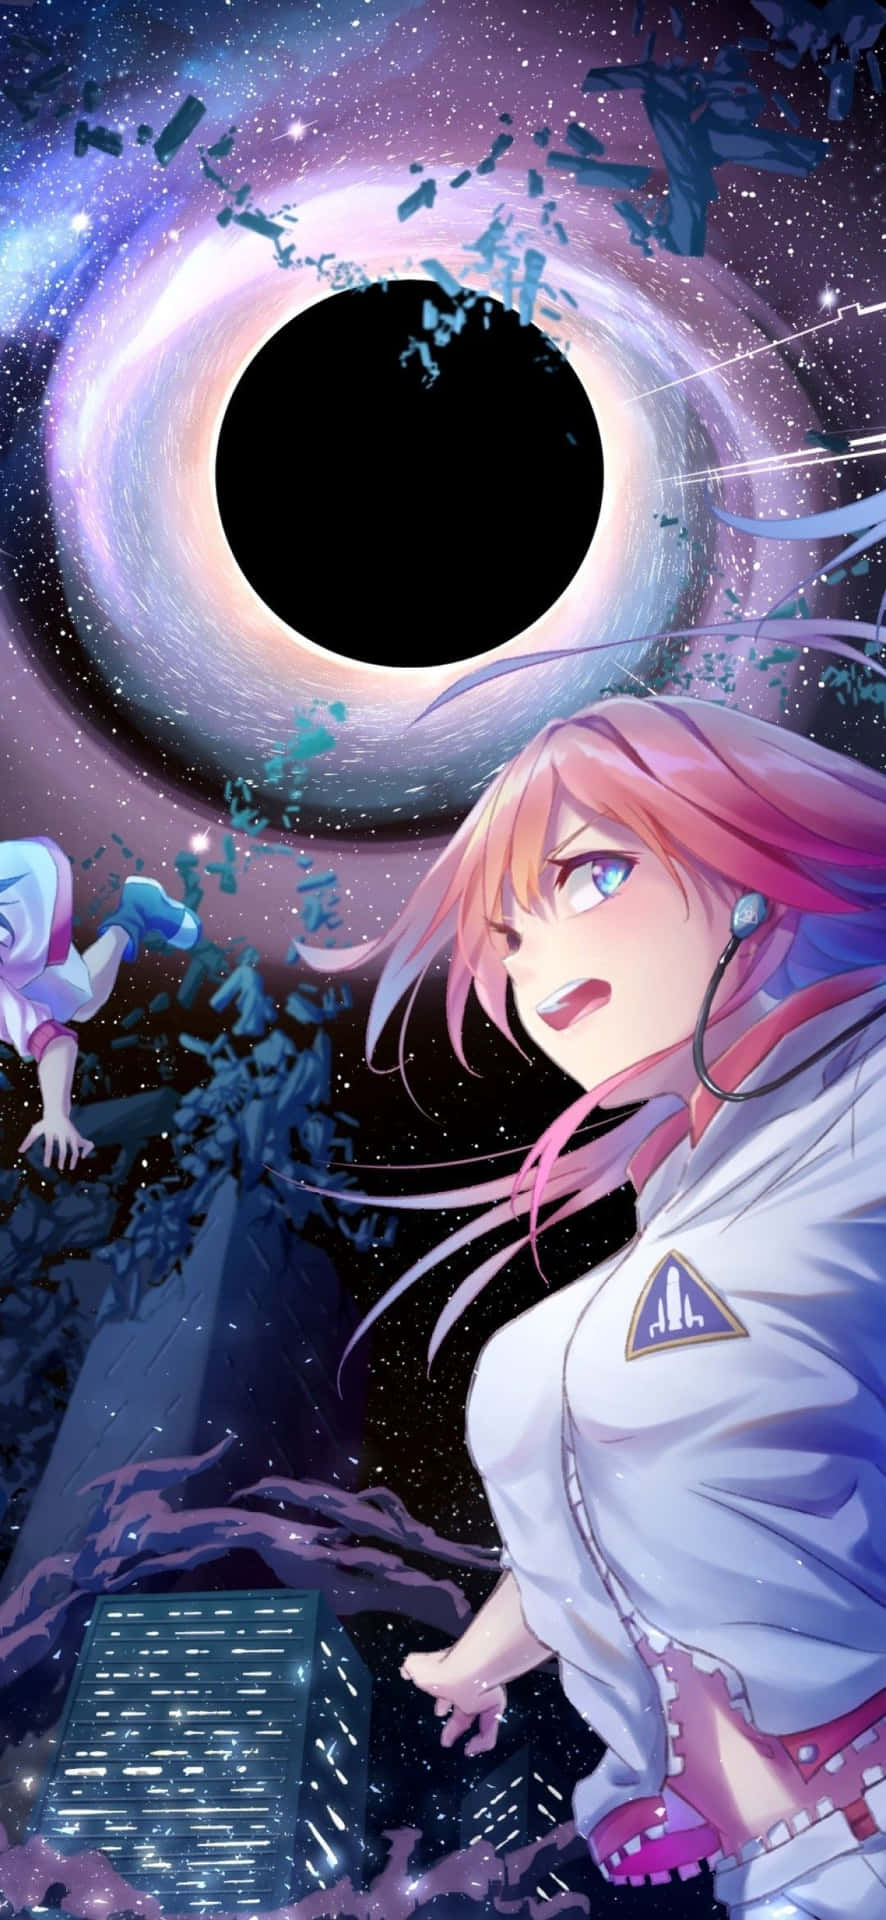 Frånfantasi Till Verklighet Öppnar Animecore Upp En Helt Ny Värld Av Möjligheter. Wallpaper